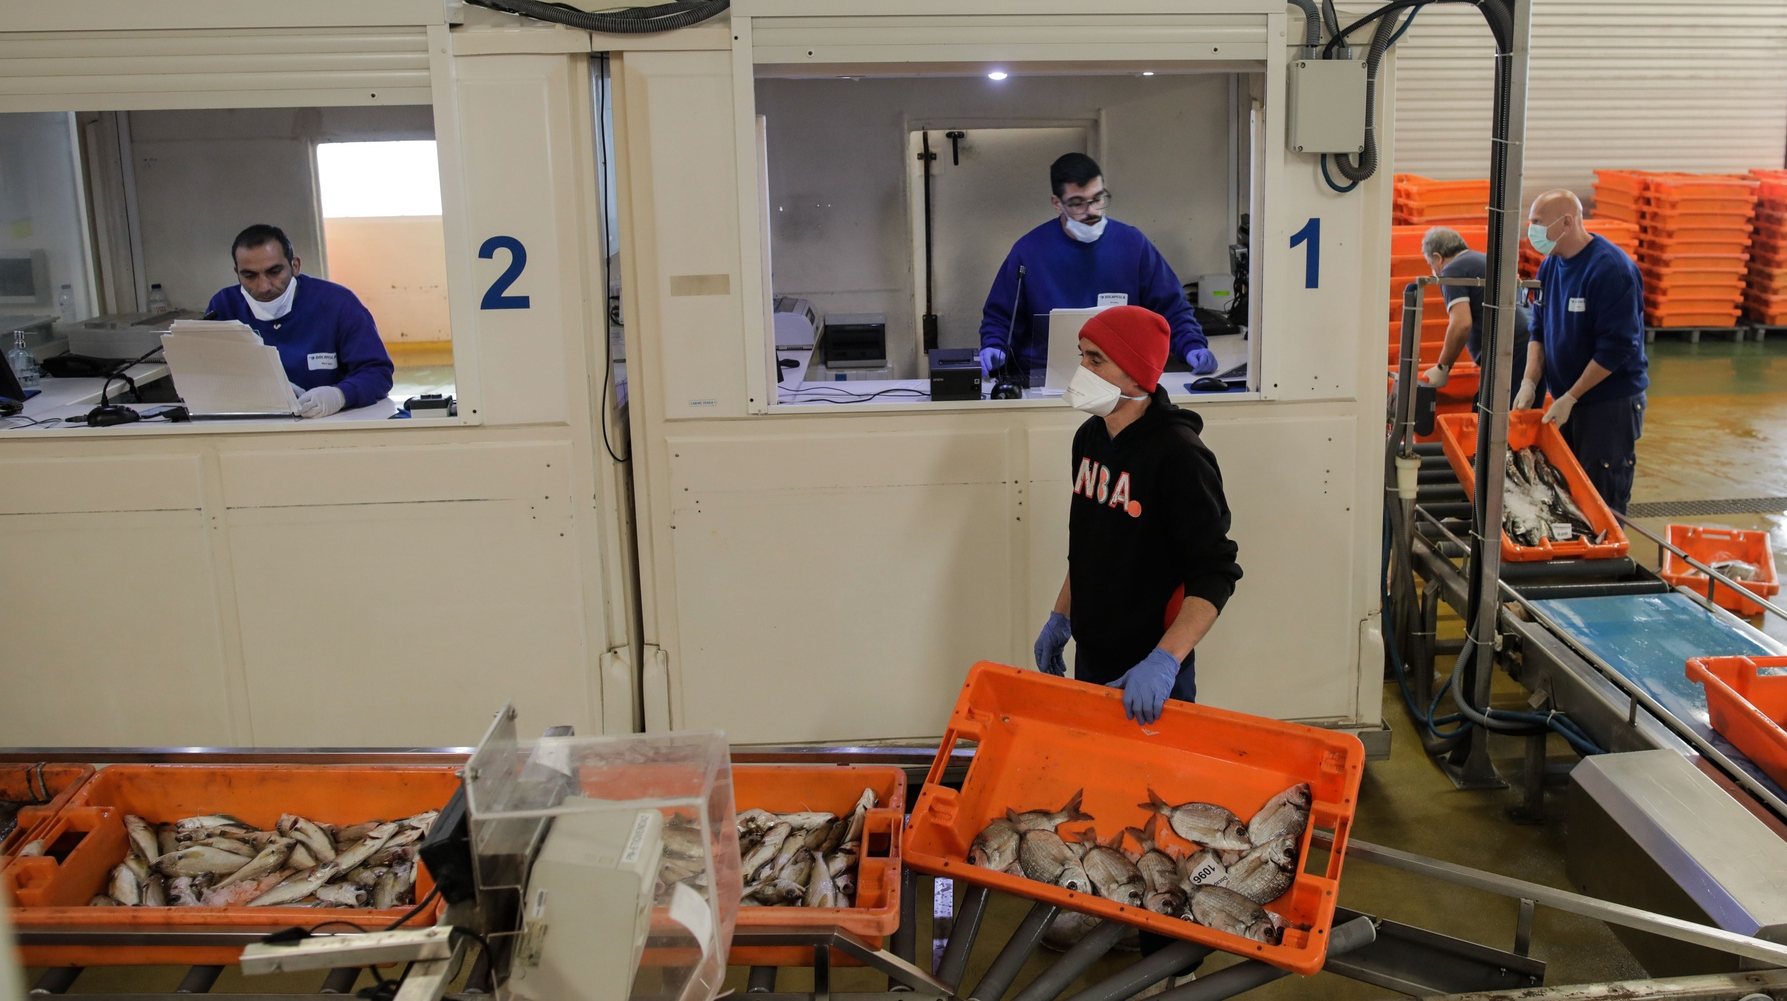 Funcionários da docapesca preparam o peixe para venda na lota de Peniche, 20 de março de 2020. O encerramento de estabelecimentos de restauração leva à queda do preço do pescado grosso e pode levar algumas embarcações a ir ao mar pescar com menos frequência, pelo perigo de contágio do coronavirus Covid -19. PAULO CUNHA /LUSA